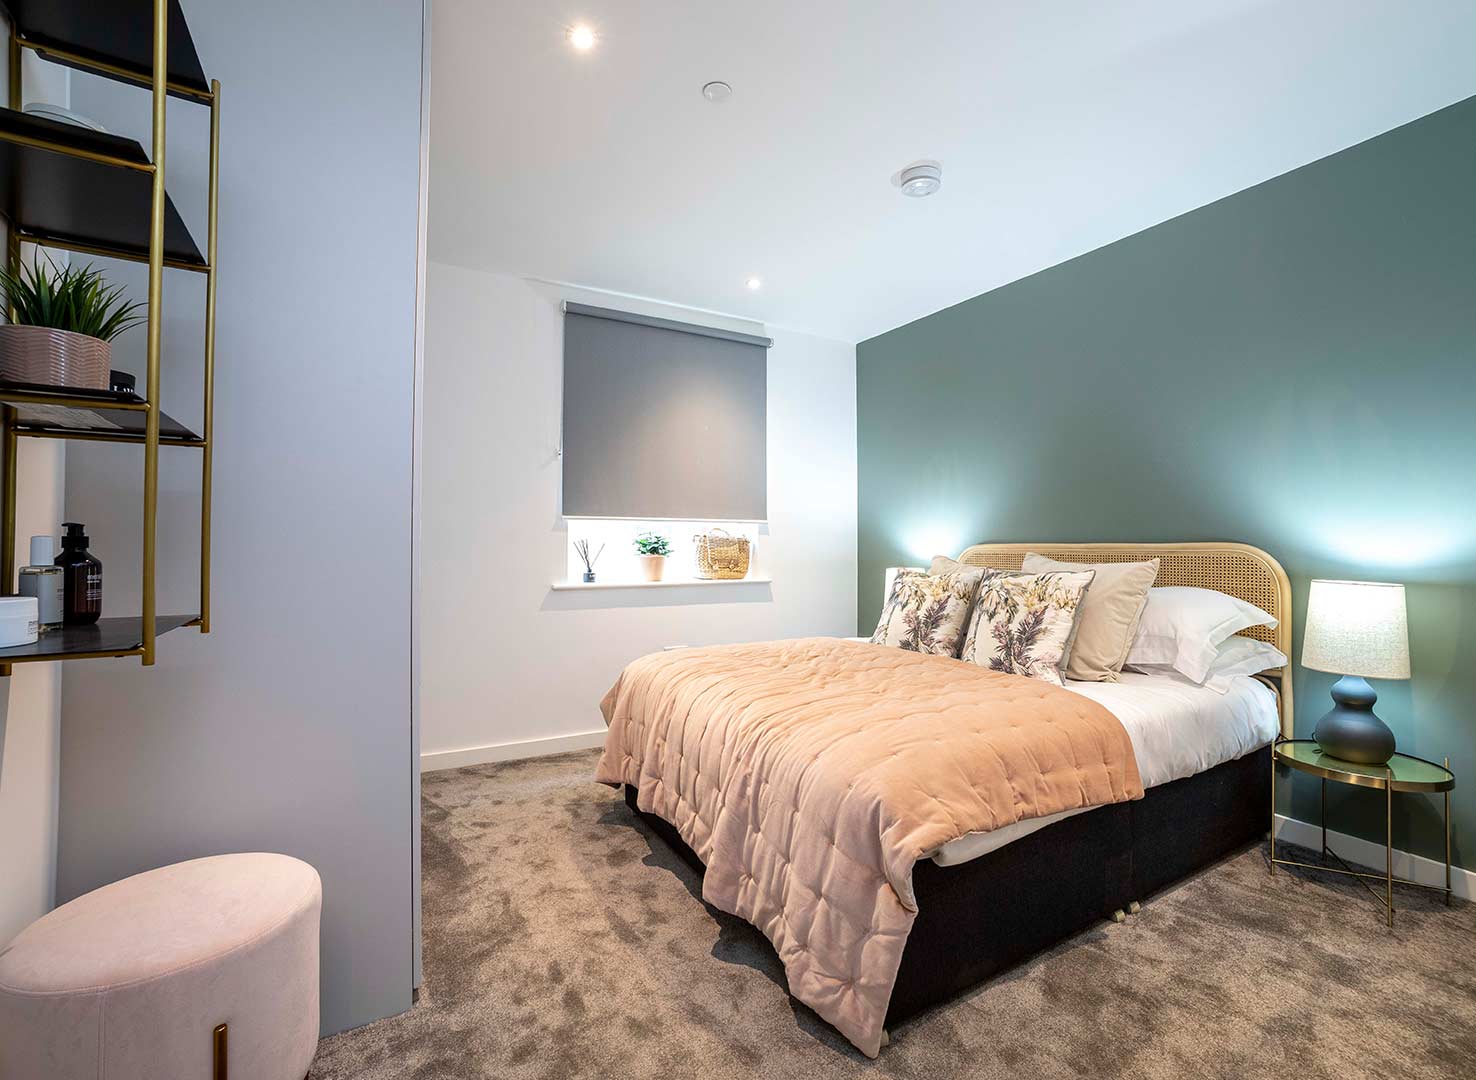 The Didsbury, East Ham, comfortable, bedrooms